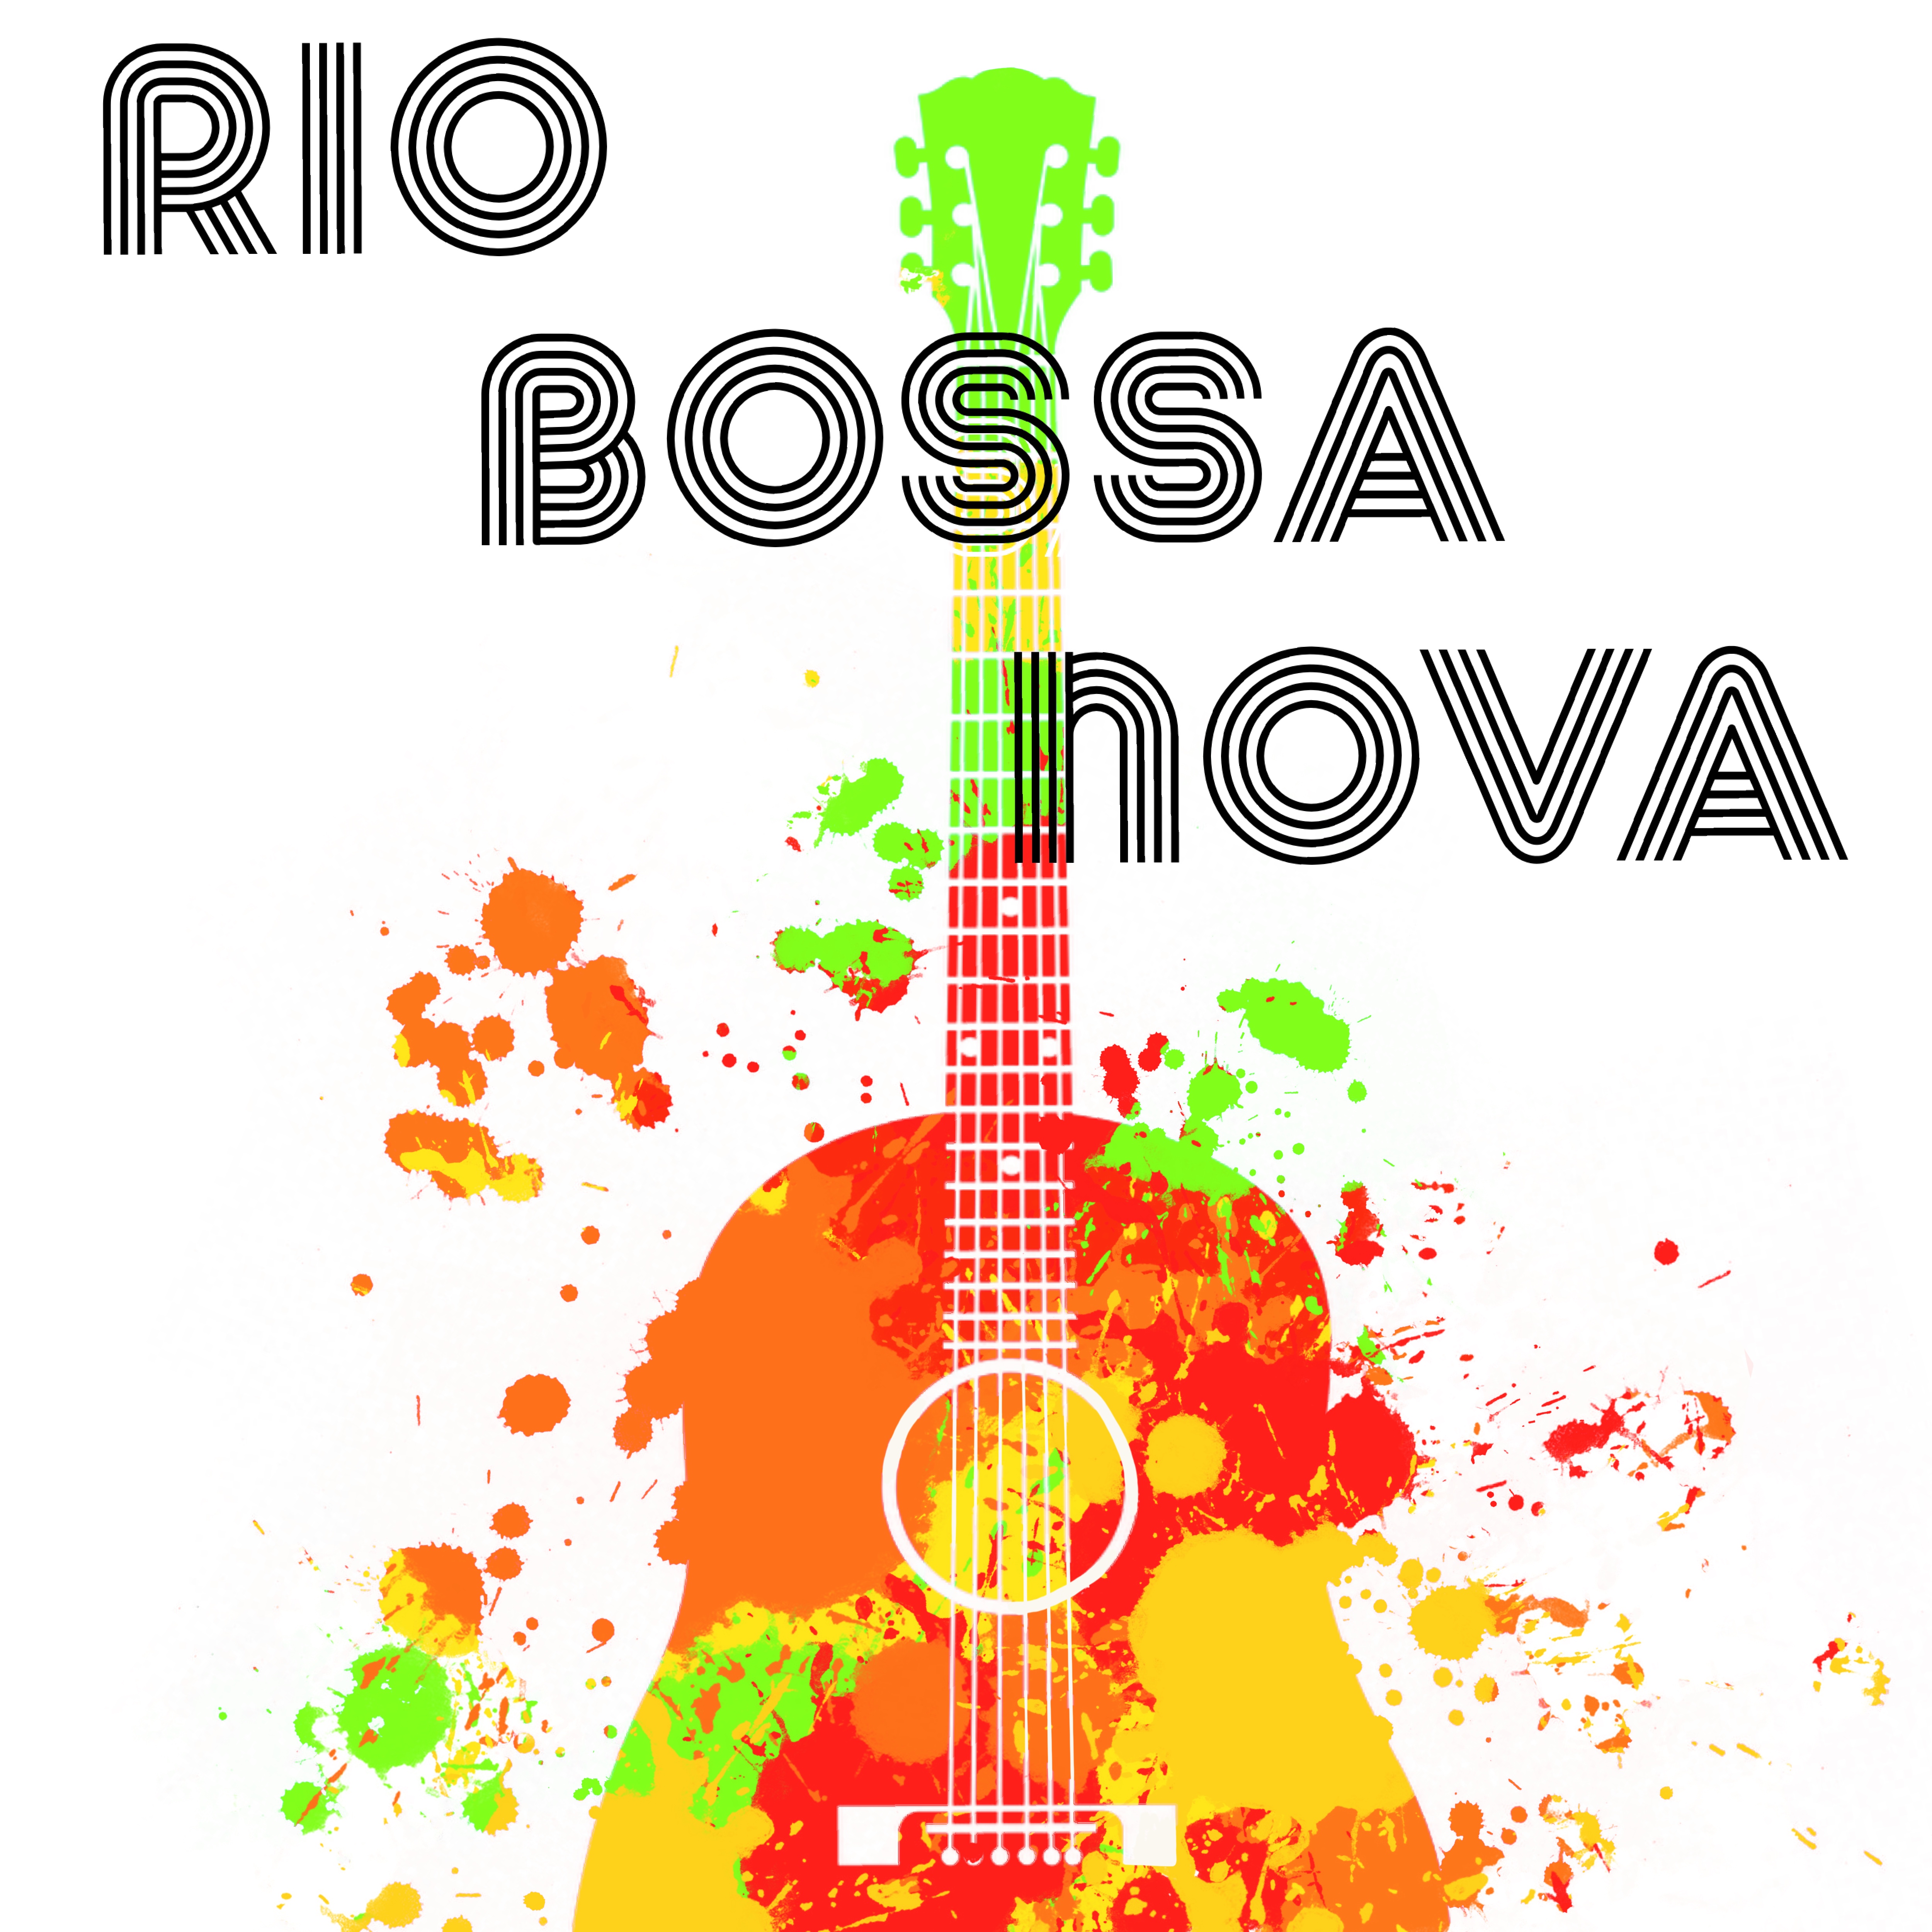 Rio Bossa Nova